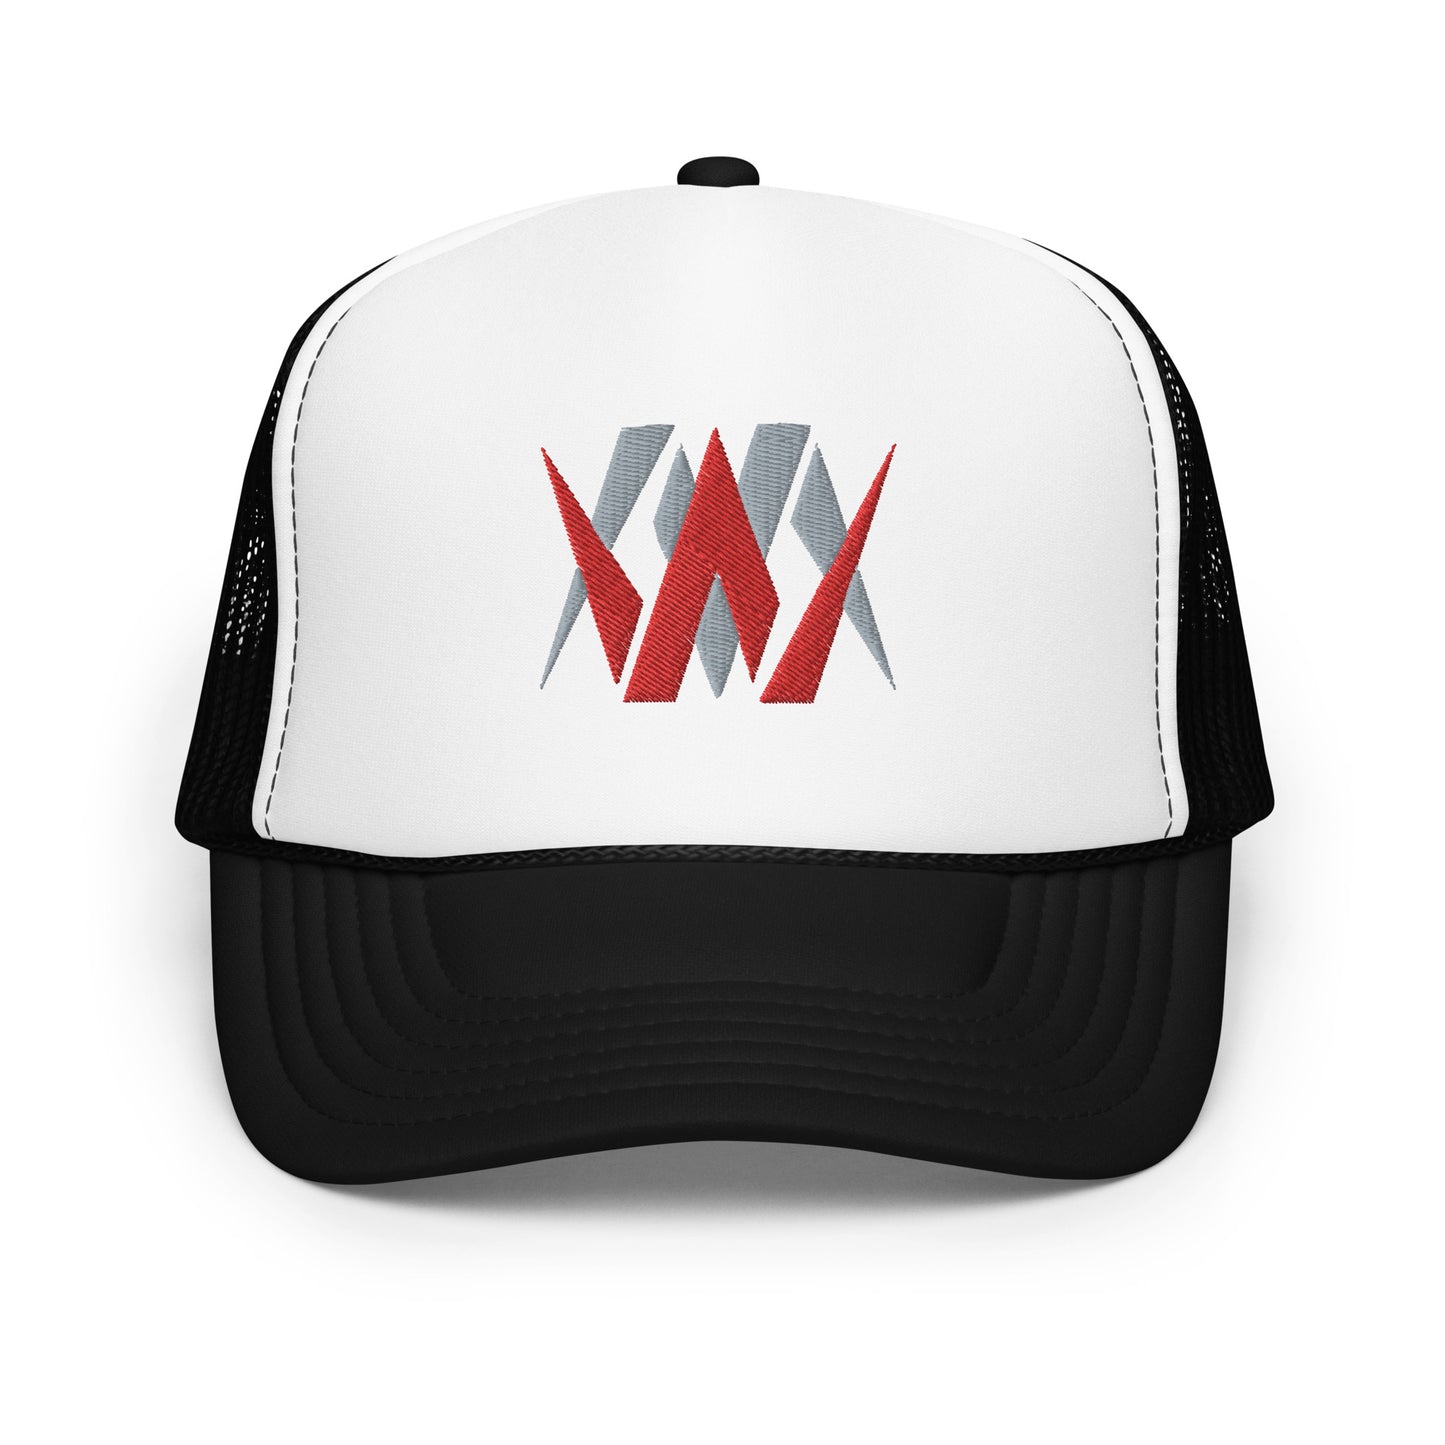 WM (WatchMan) Foam trucker hat